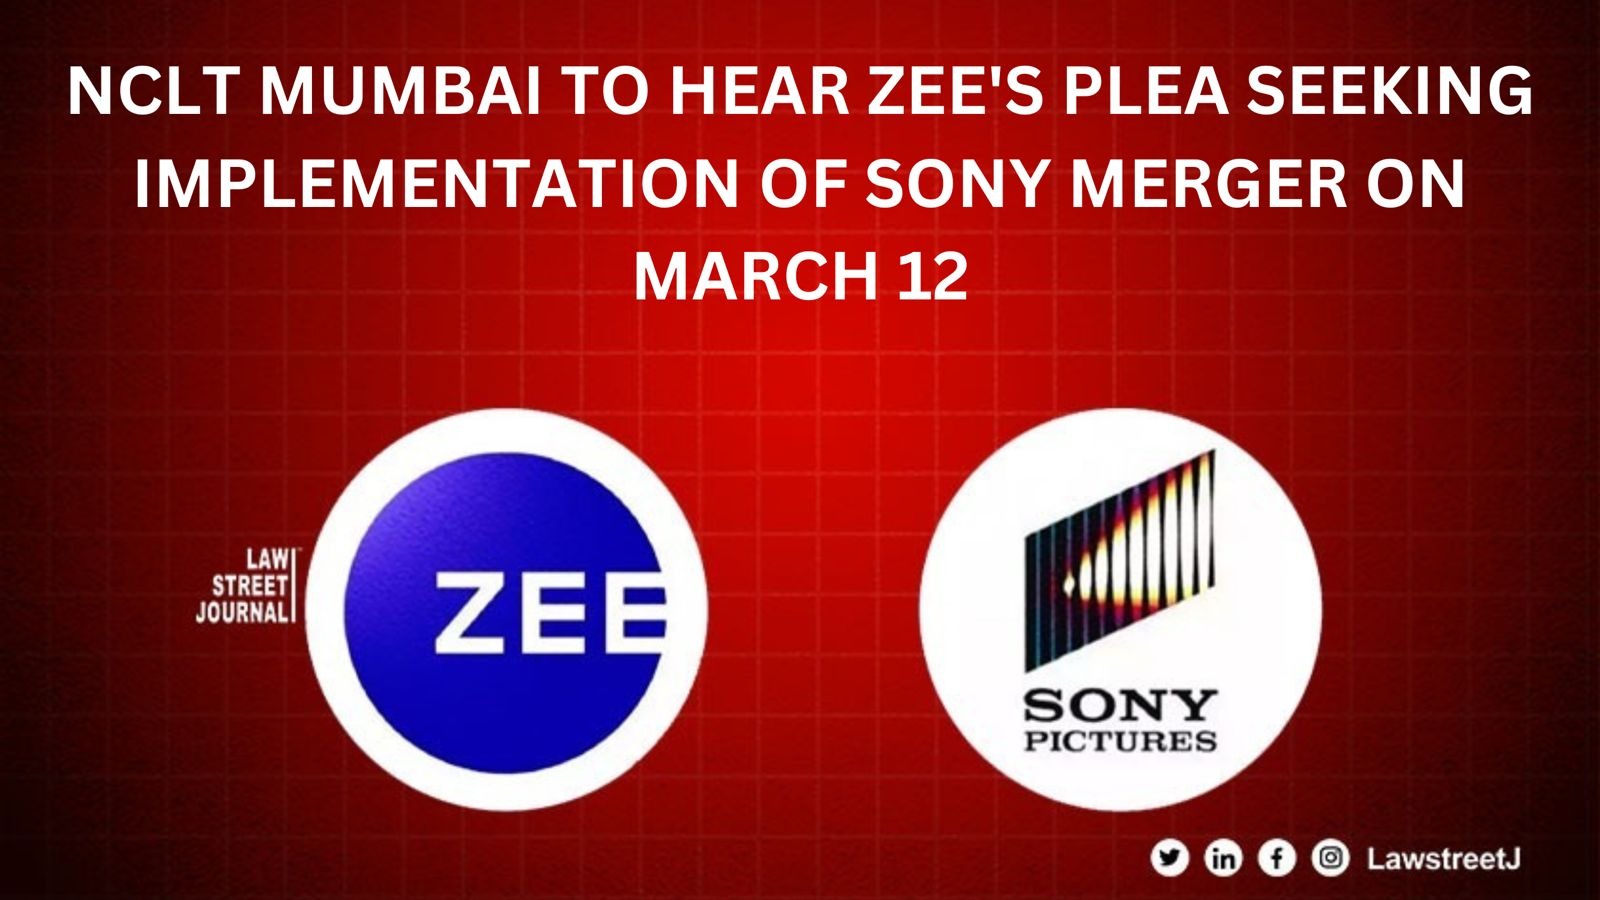 NCLT Mumbai agrees to hear Zee's plea seeking implementation of Sony merger